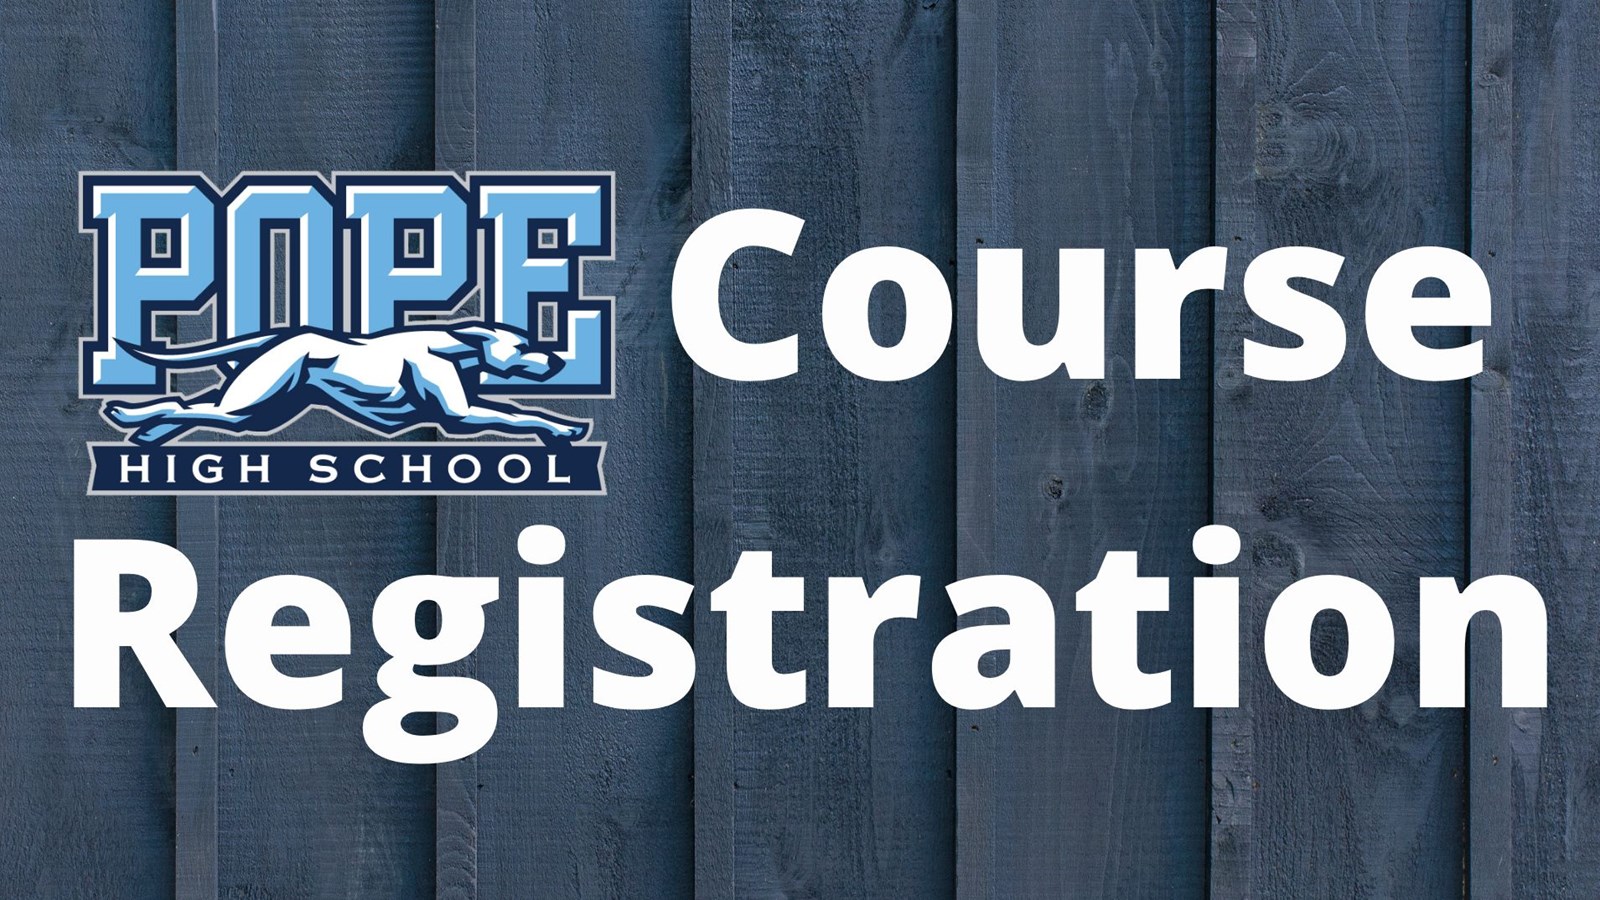 course registration